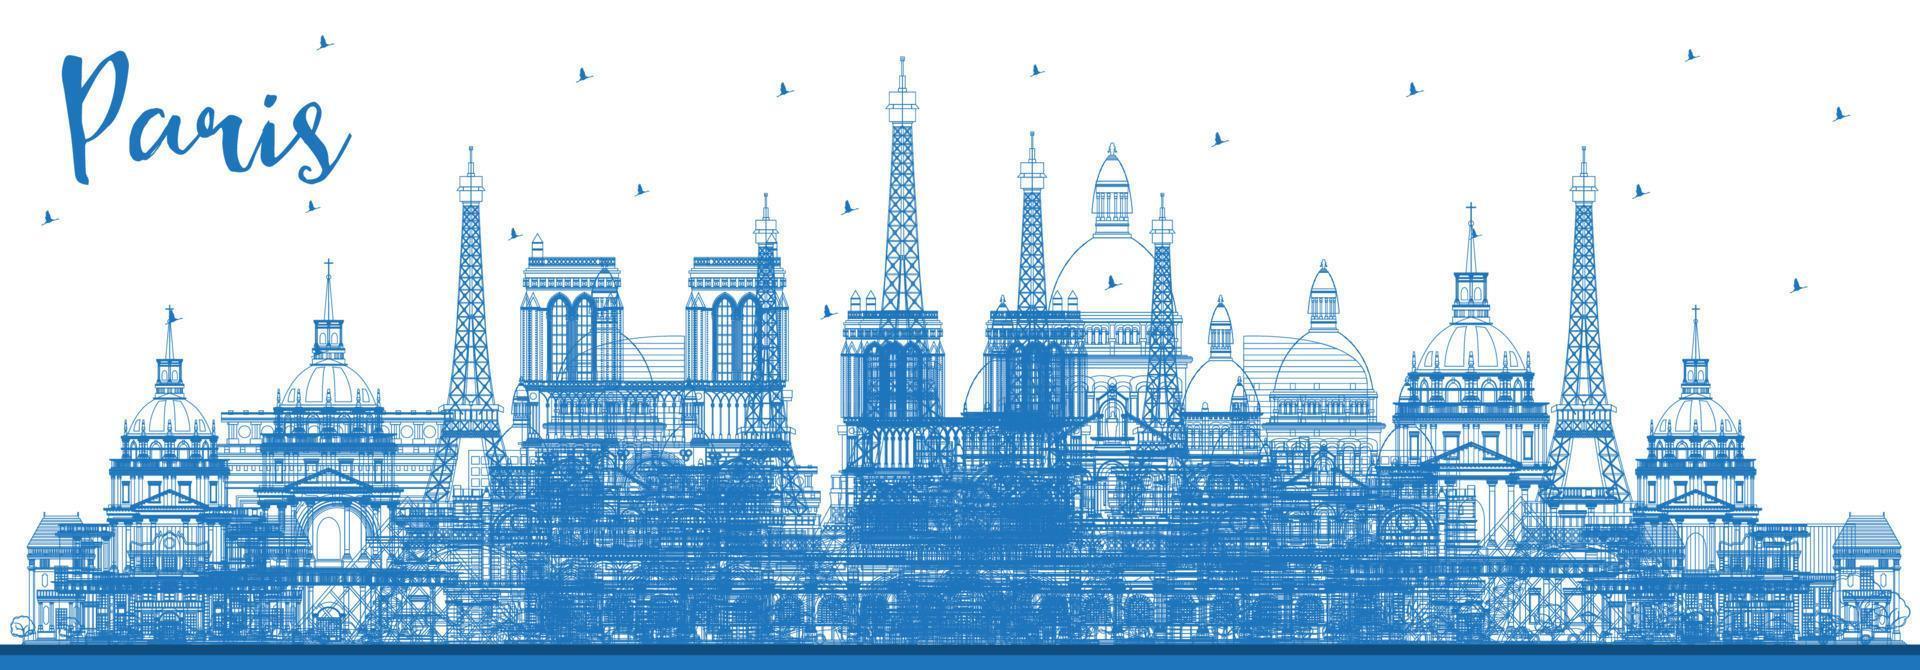 delineie o horizonte da cidade de paris frança com edifícios azuis. vetor